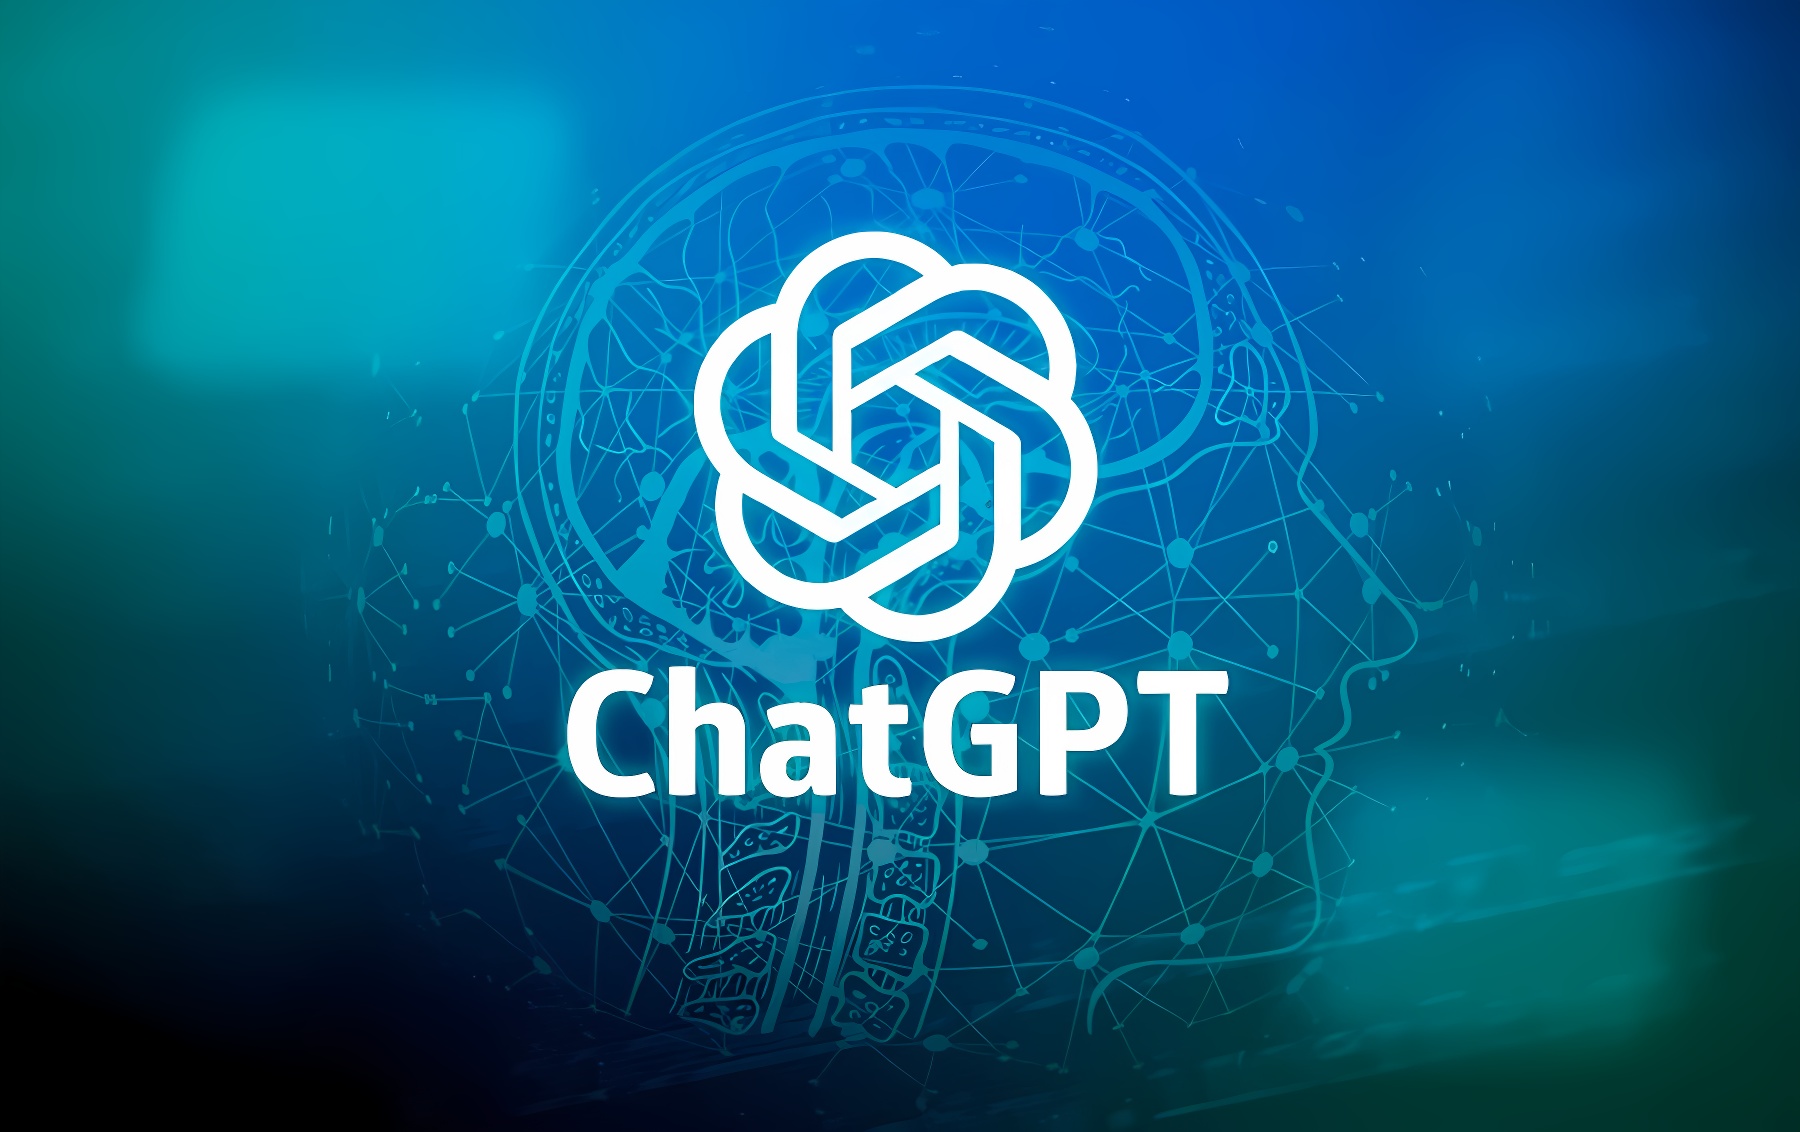 这张图片展示了一个蓝色背景上的ChatGPT标志，标志中心是一个复杂的几何图形，四周环绕着数字化元素和代码符号。